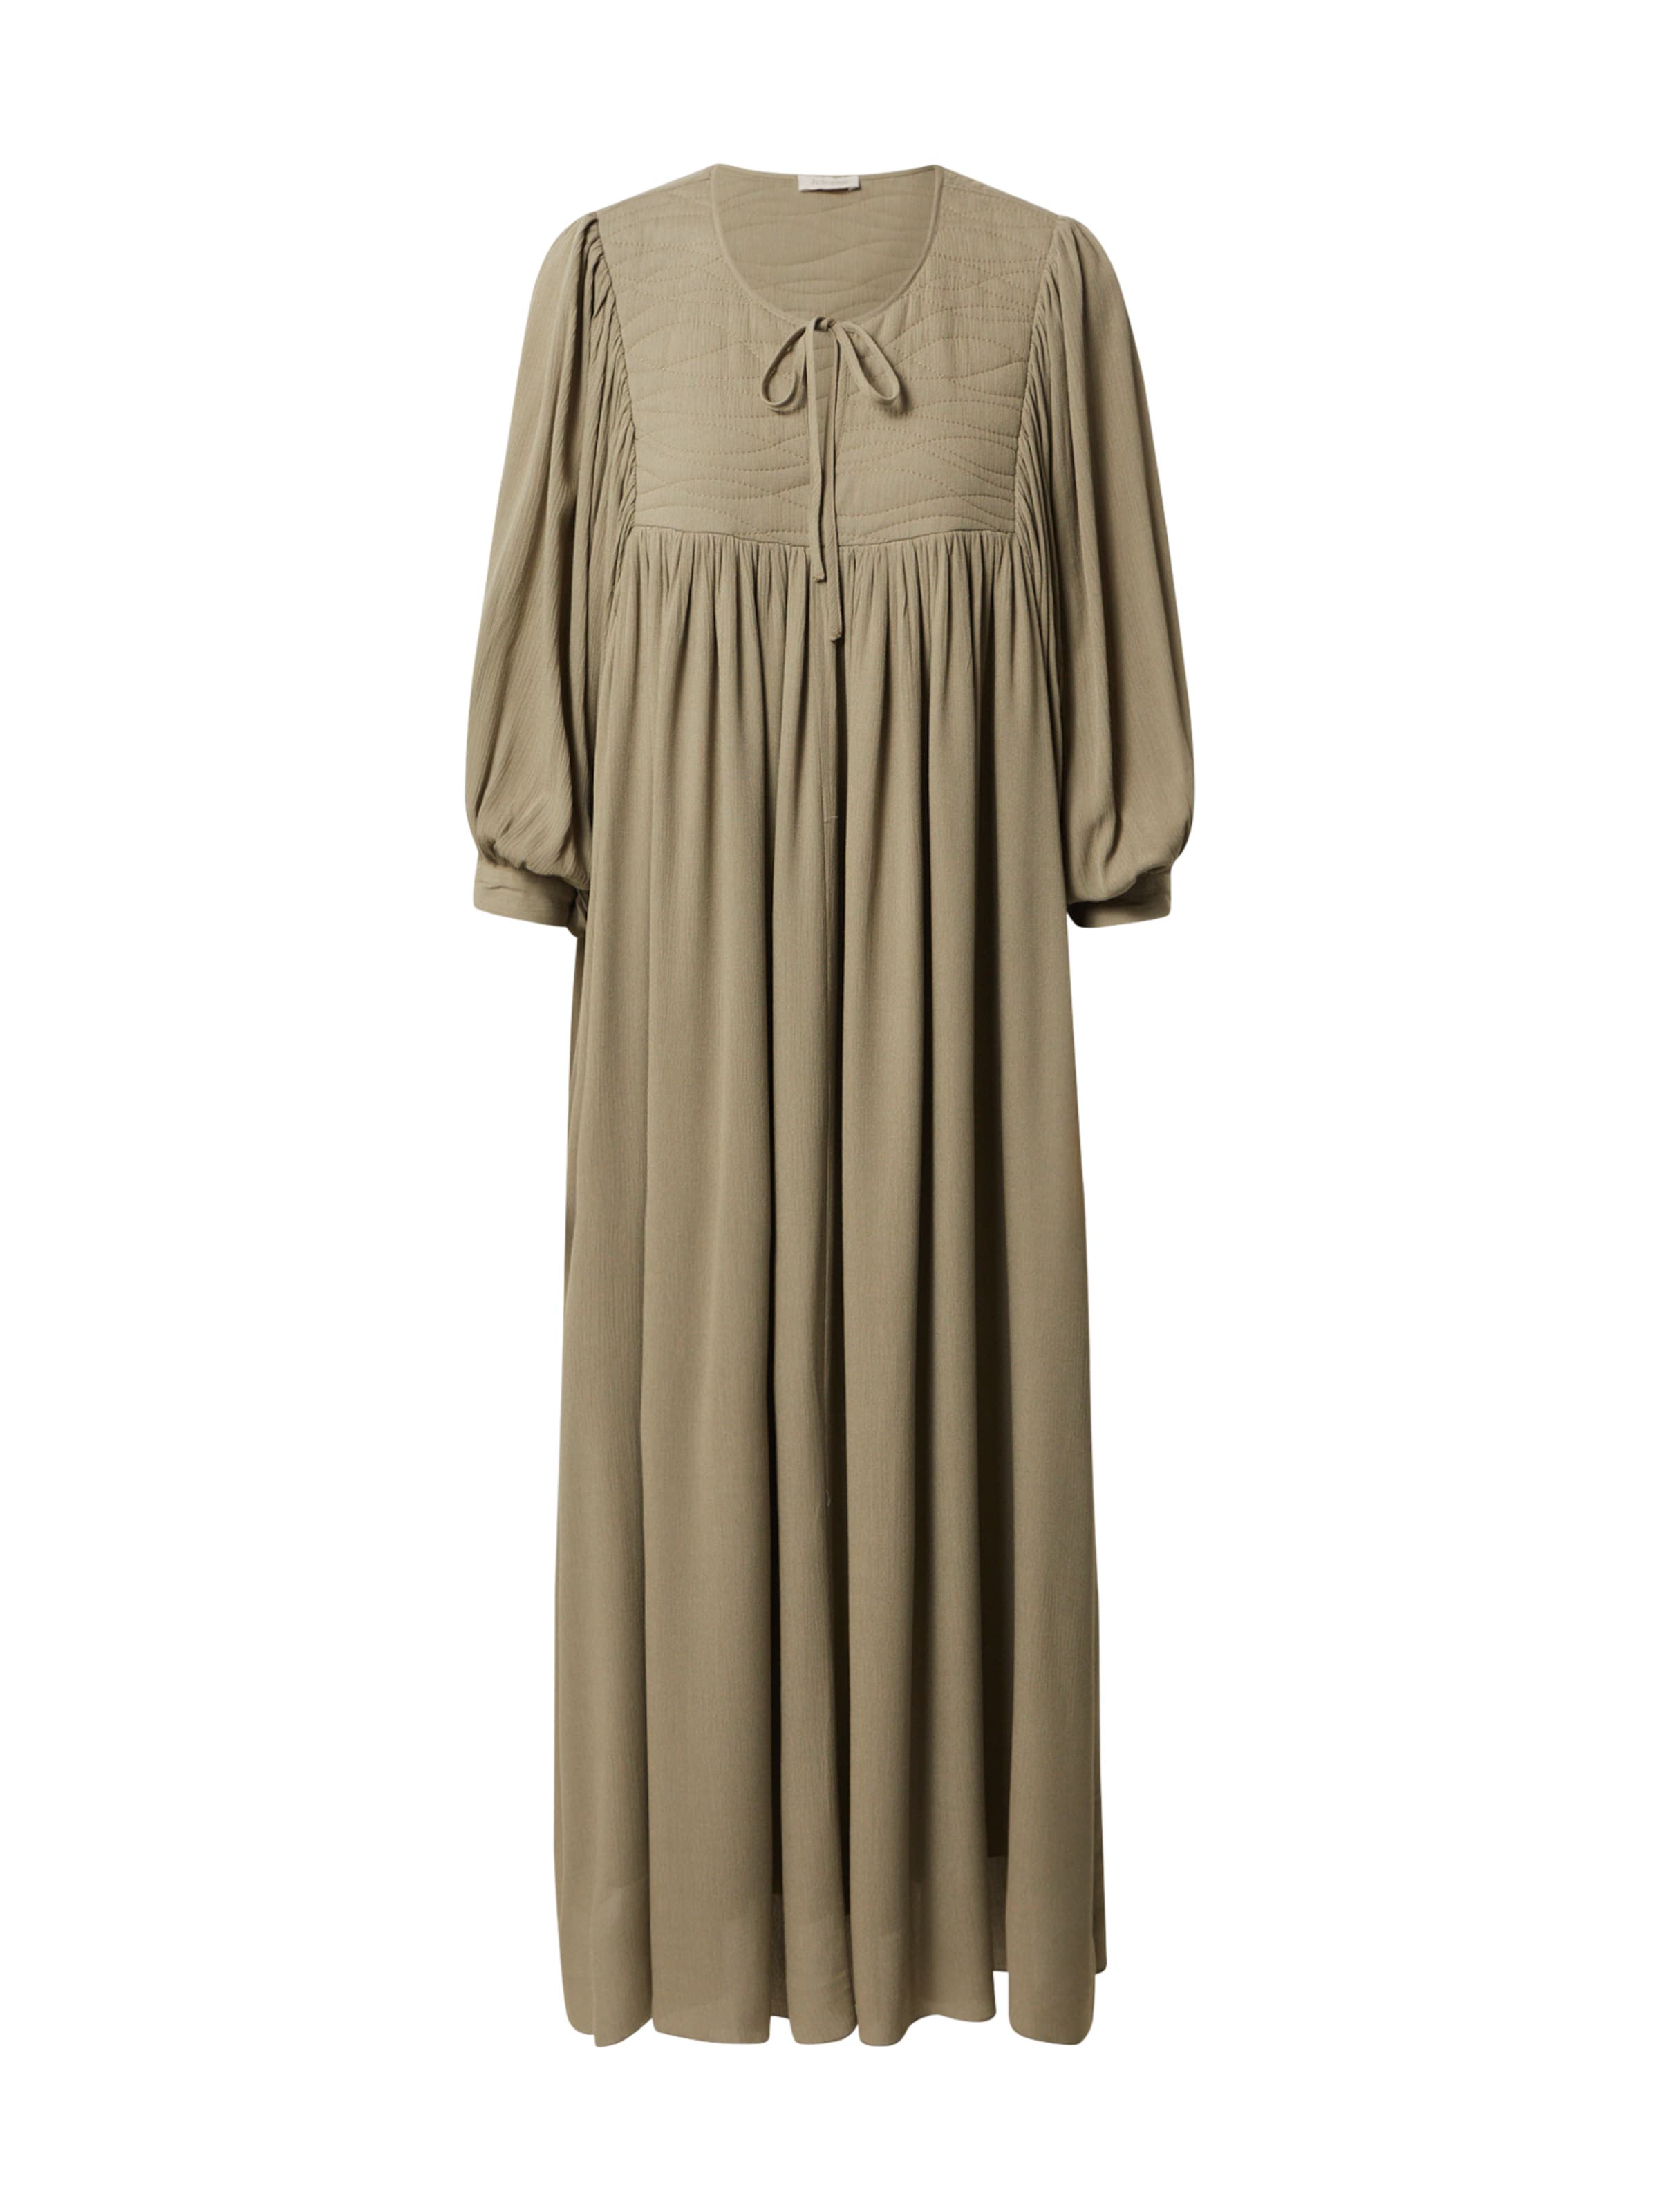 Frauen Kleider JcSophie Kleid 'Lara' in Oliv - HX68259